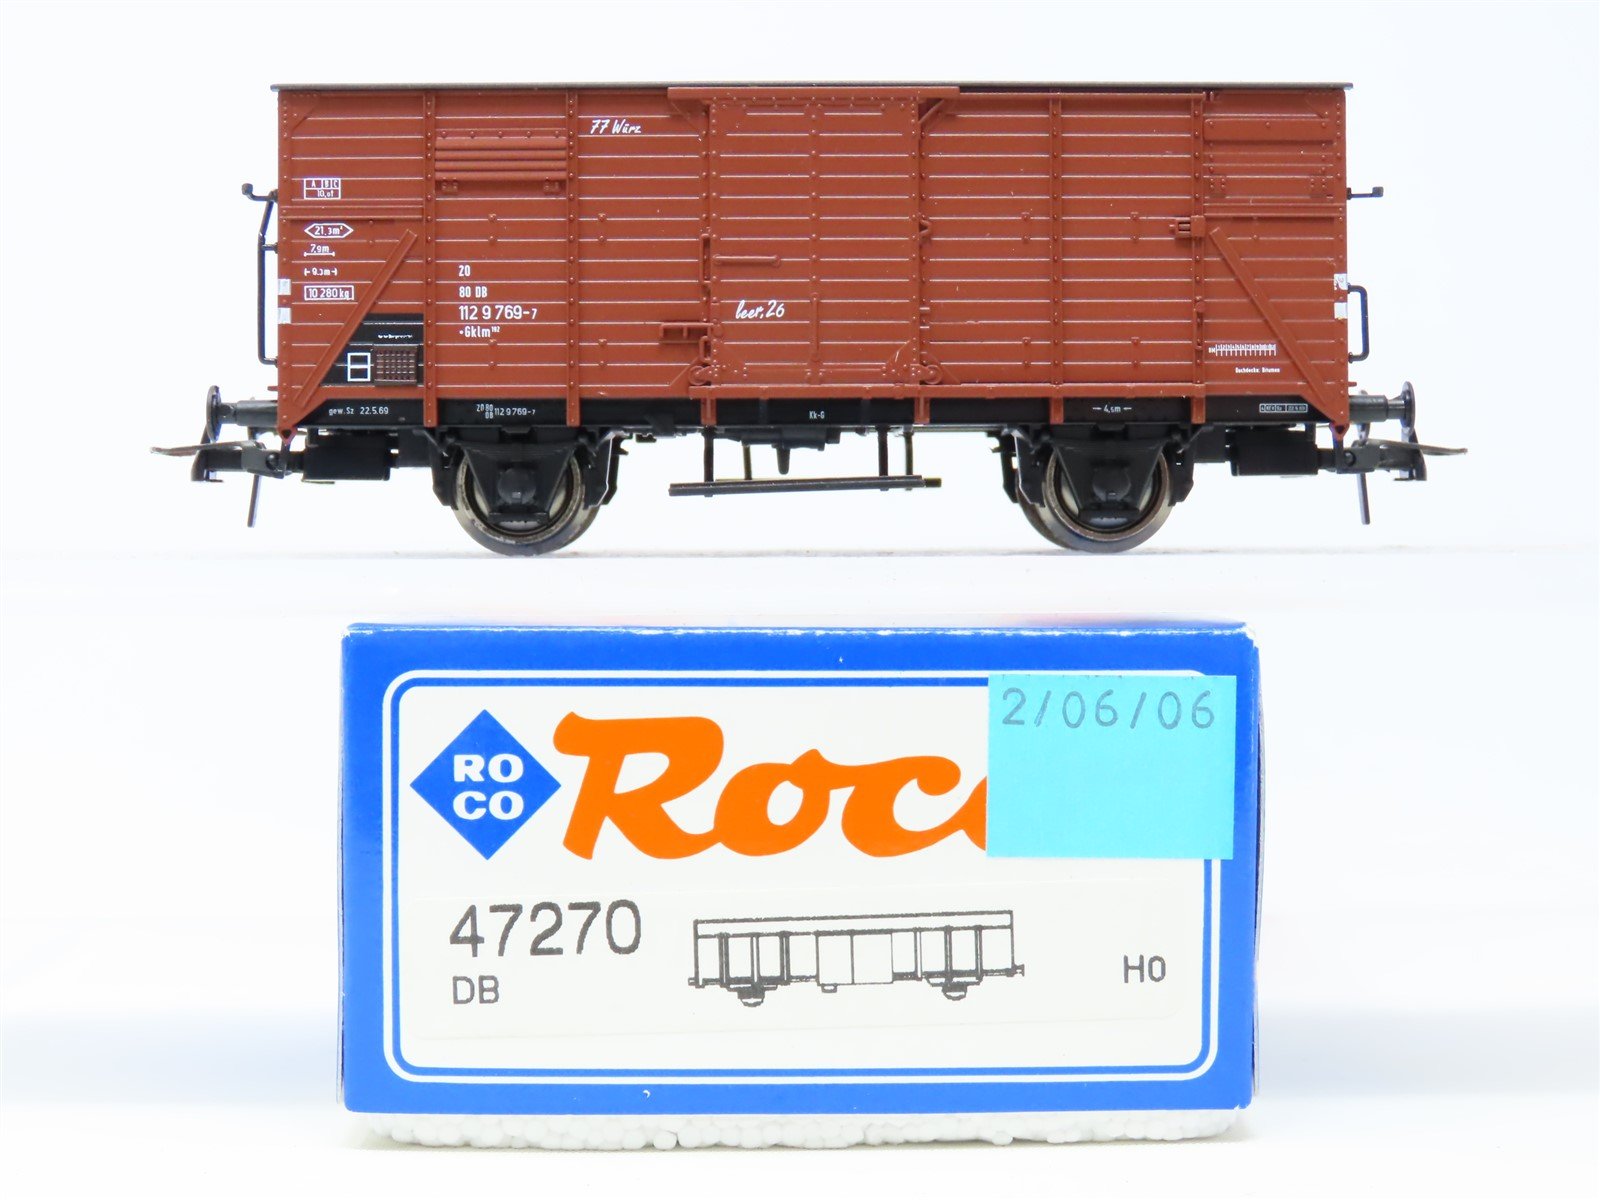 HO Scale Roco 47270 DB German Federal Railway Box Car #769-7